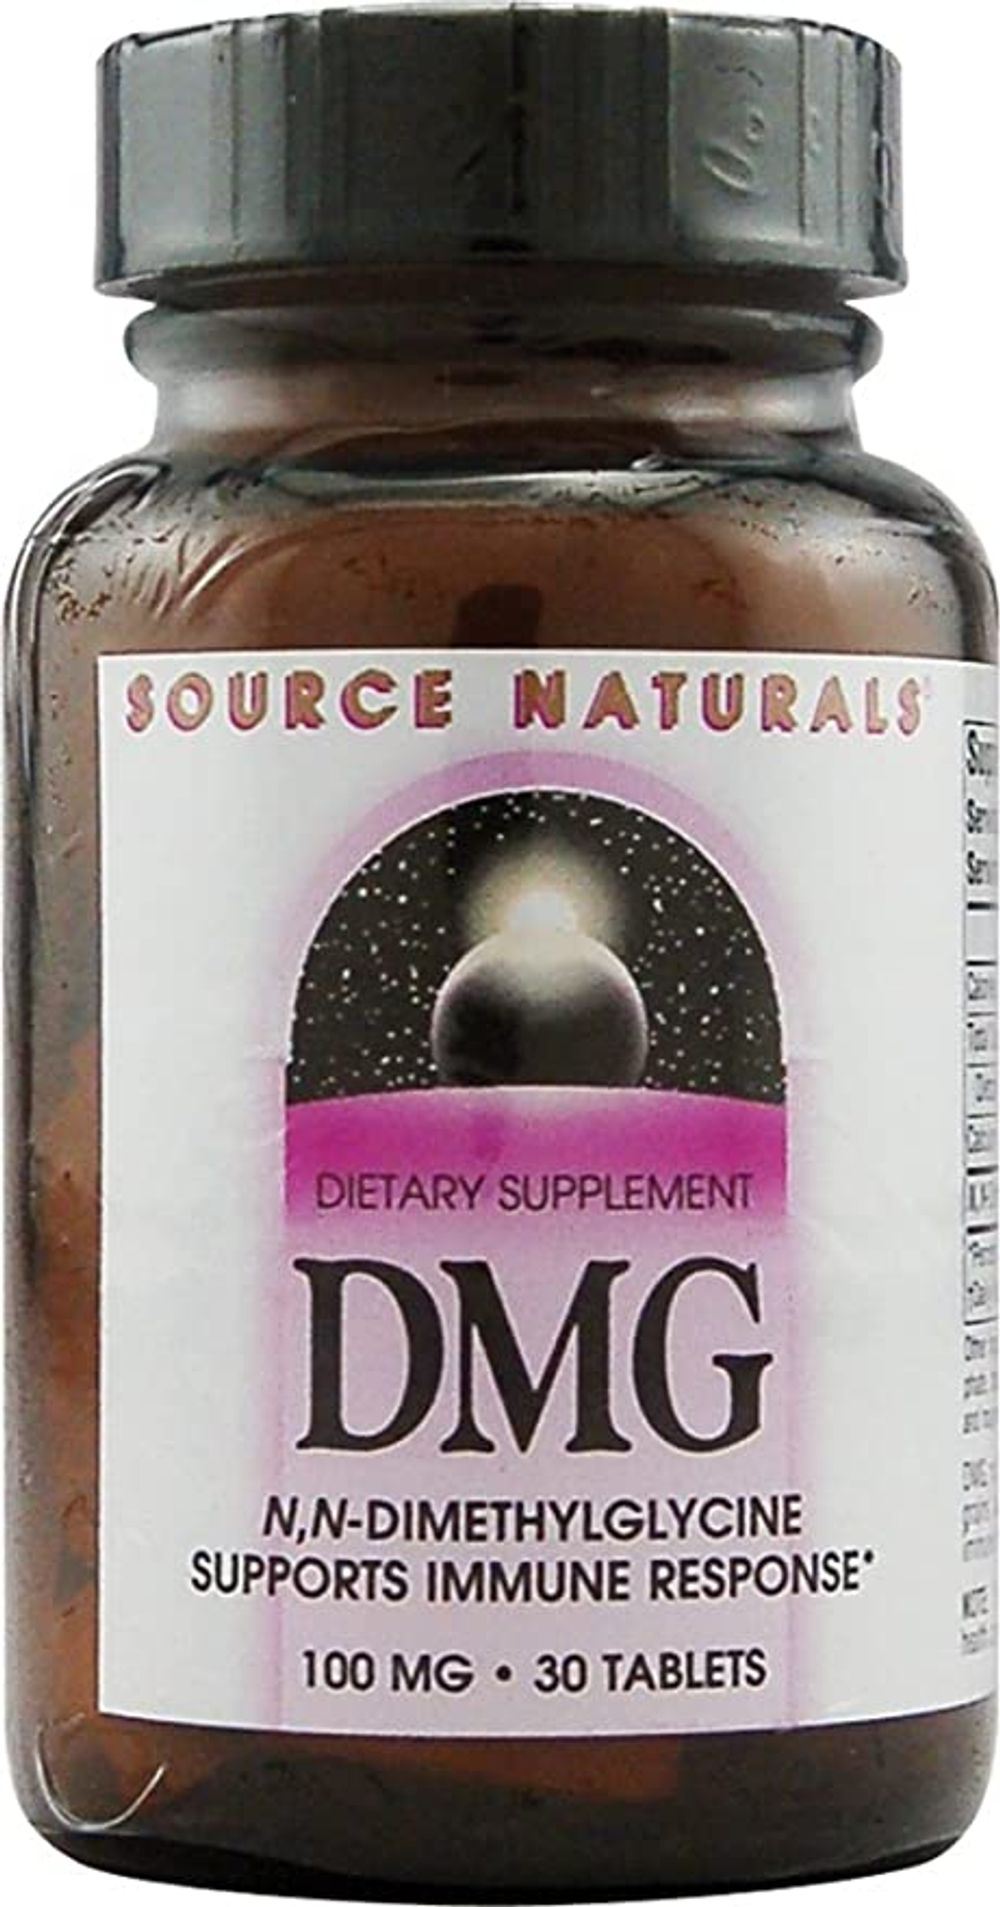 buy dmg supplement